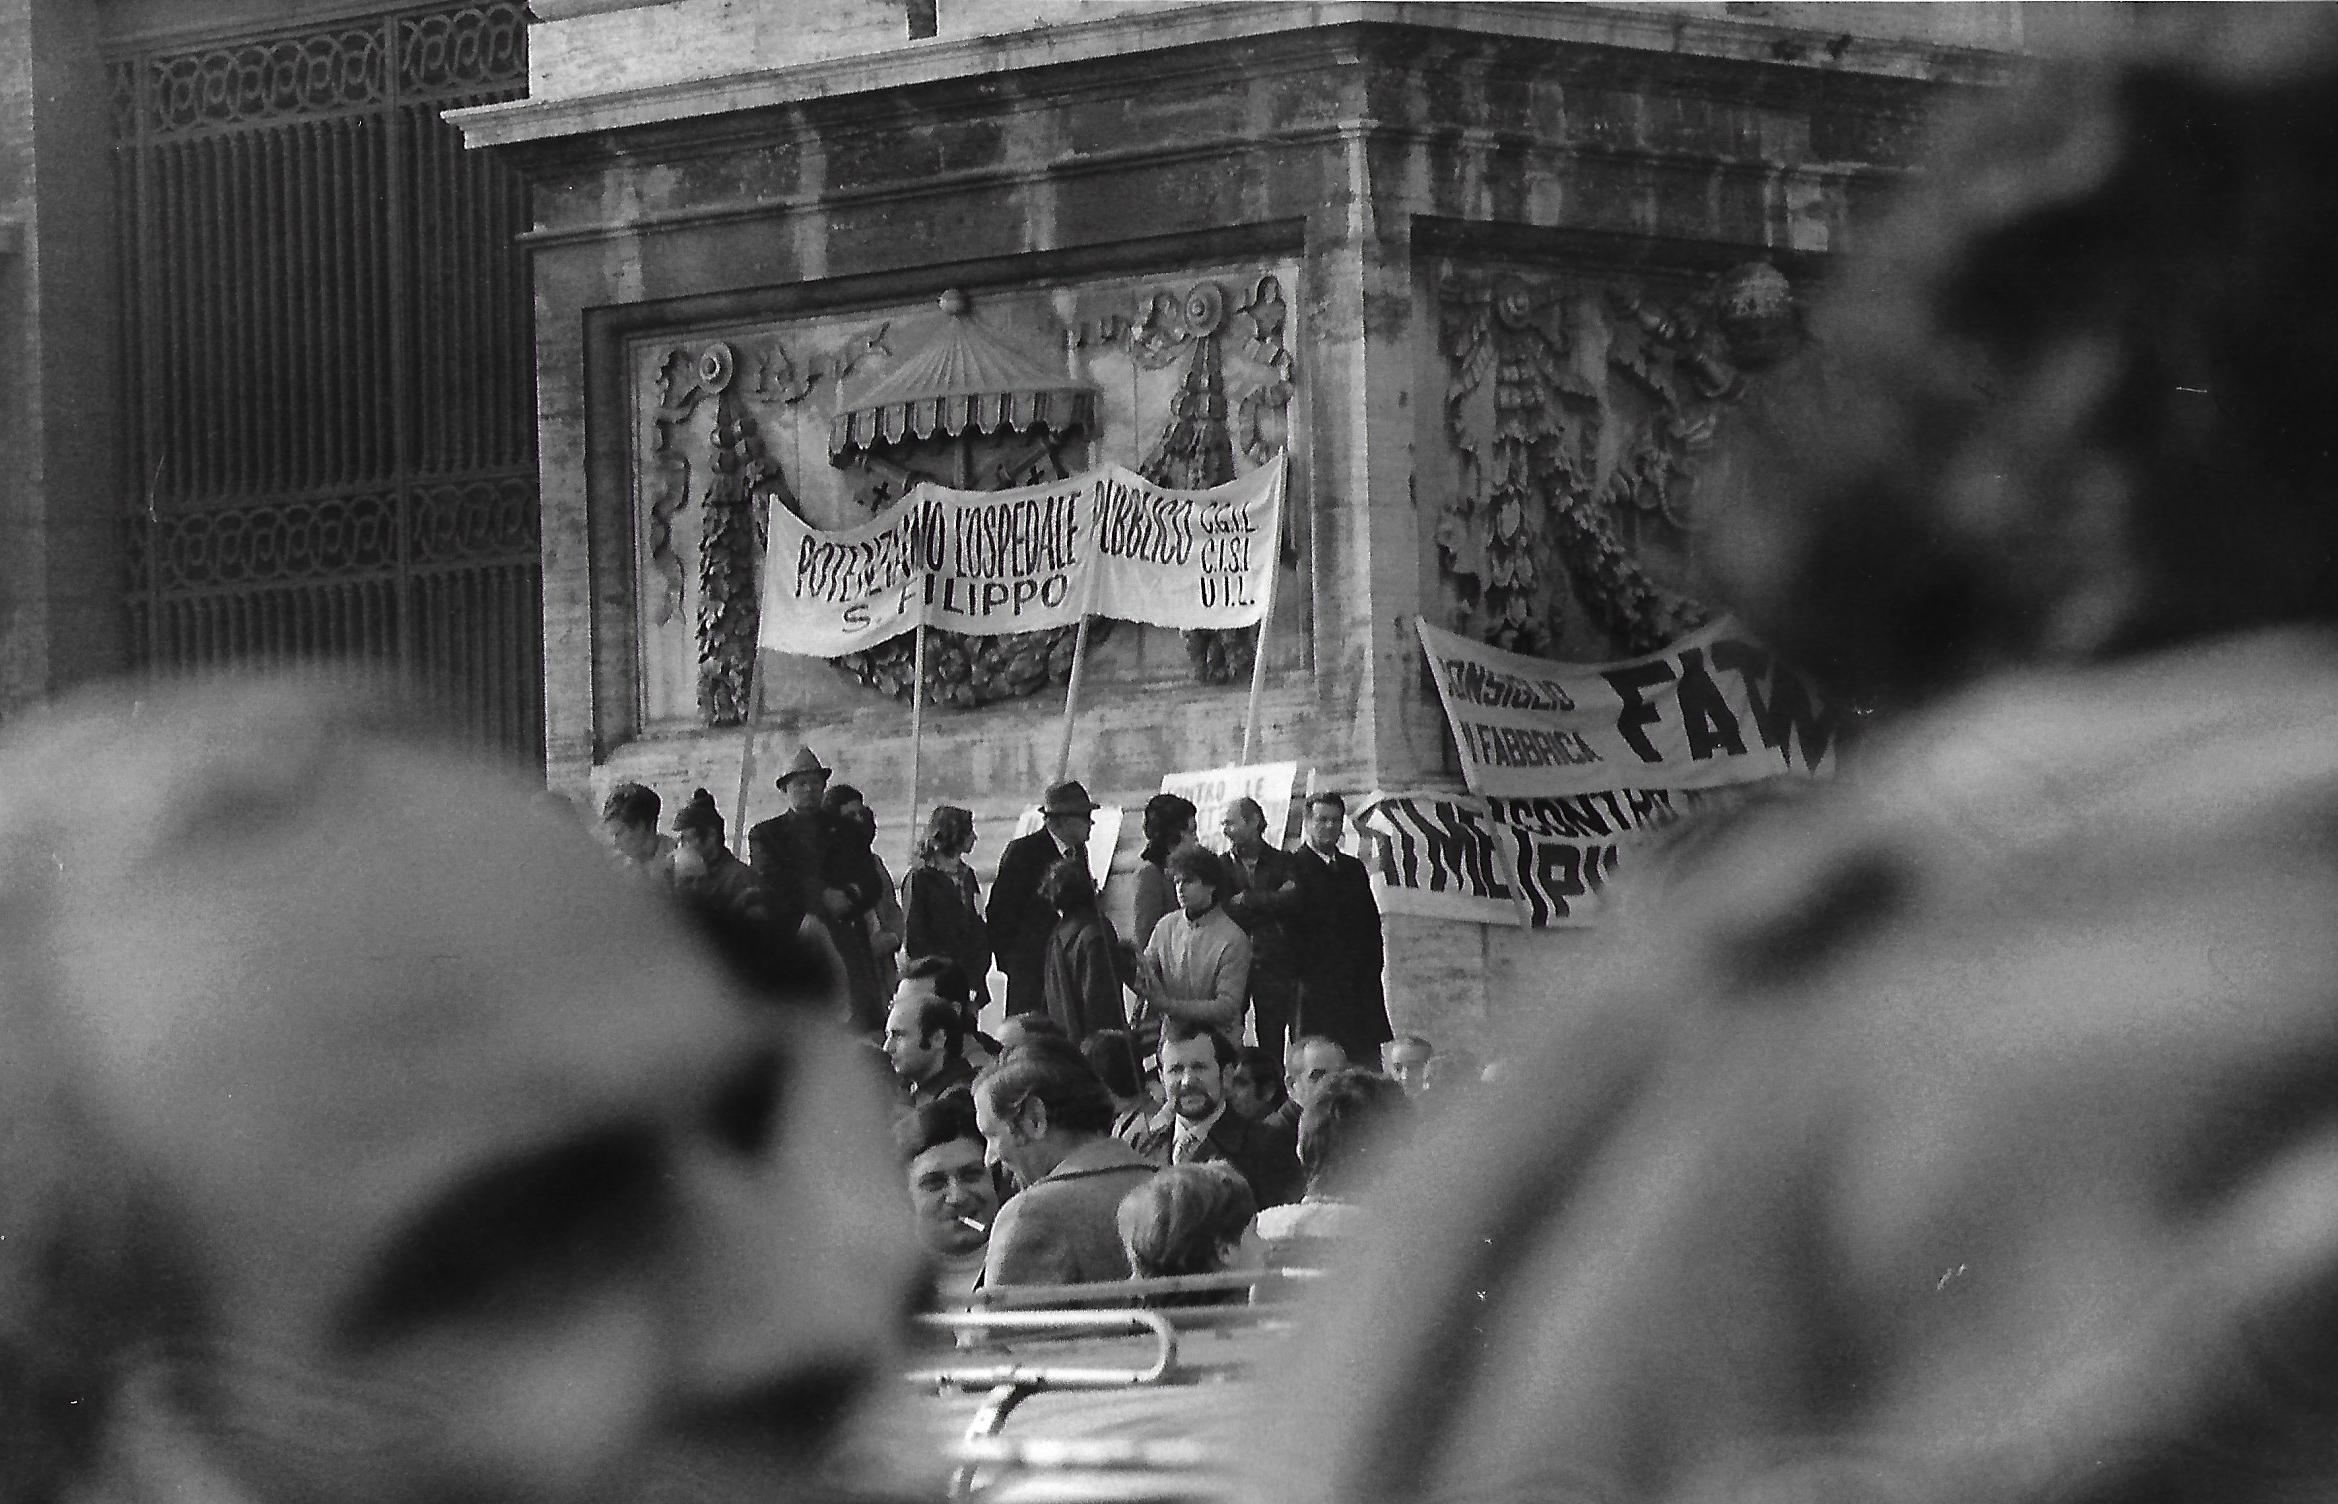 29 gennaio 1974 - Roma - Manifestazione per contratto unico ospedalieri